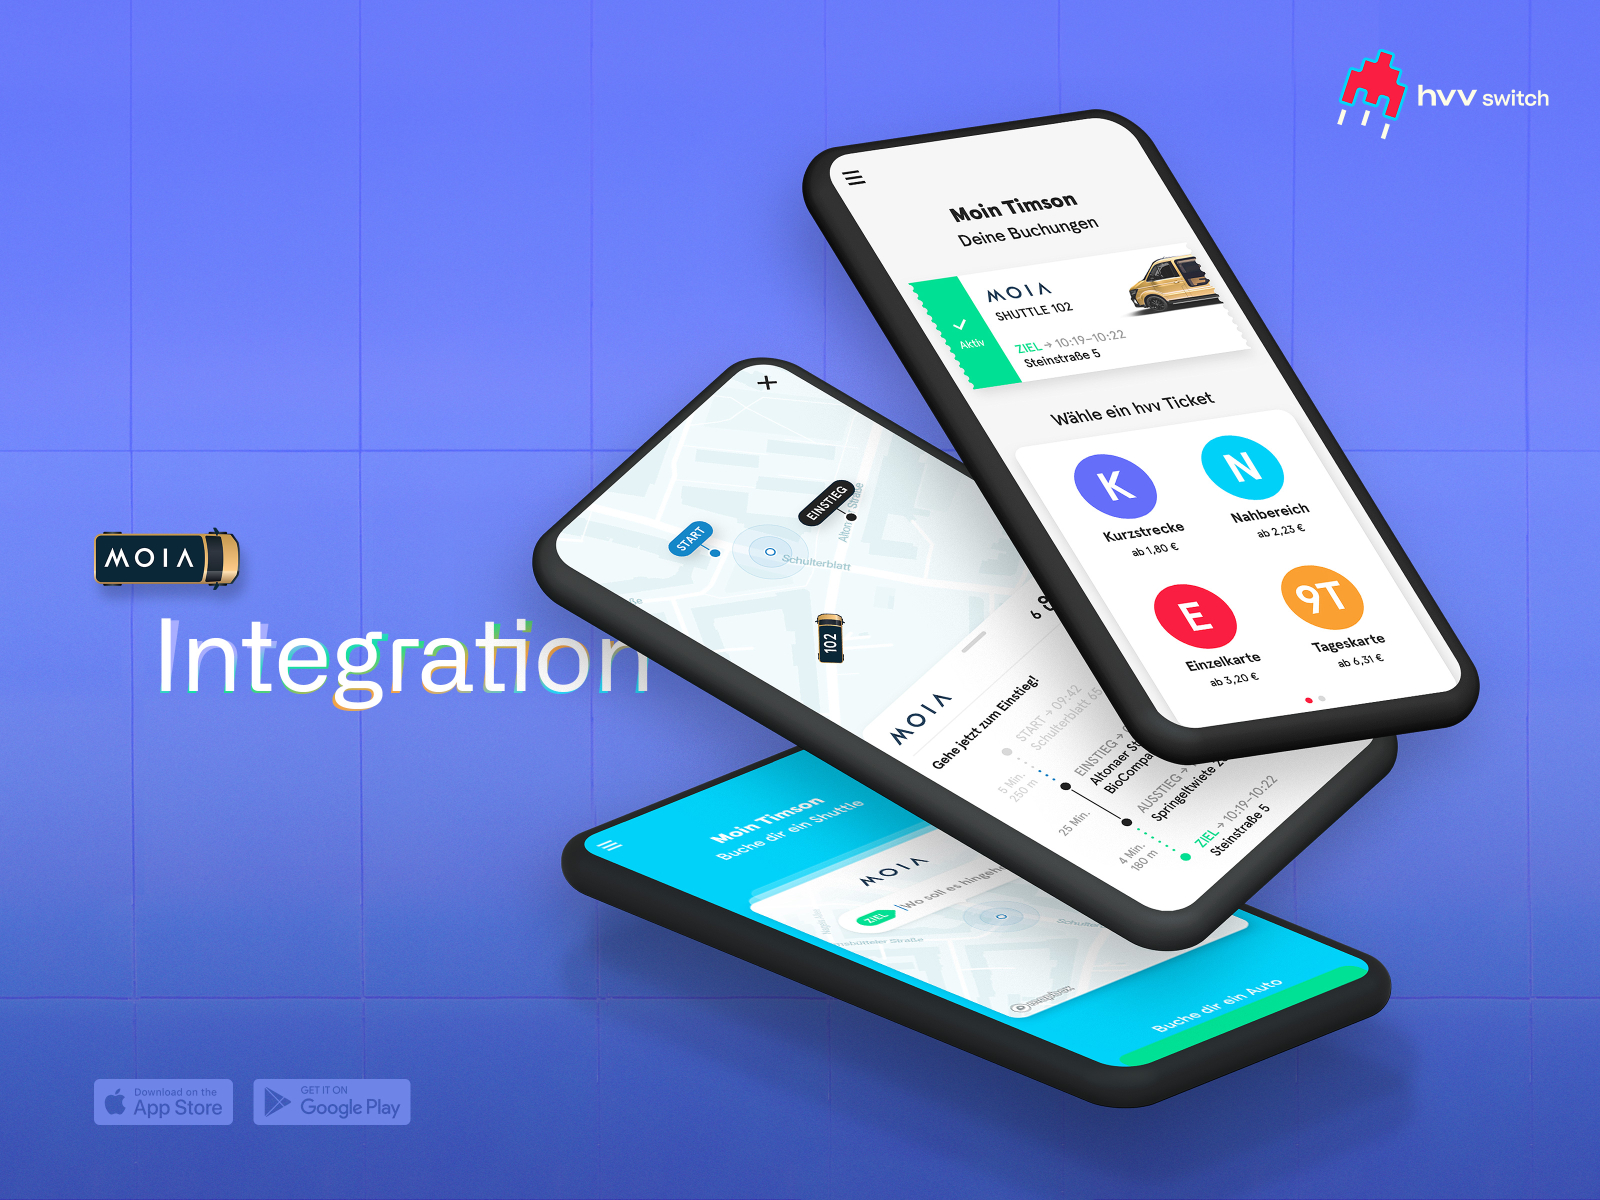 hvv switch App – MOIA Service Integration